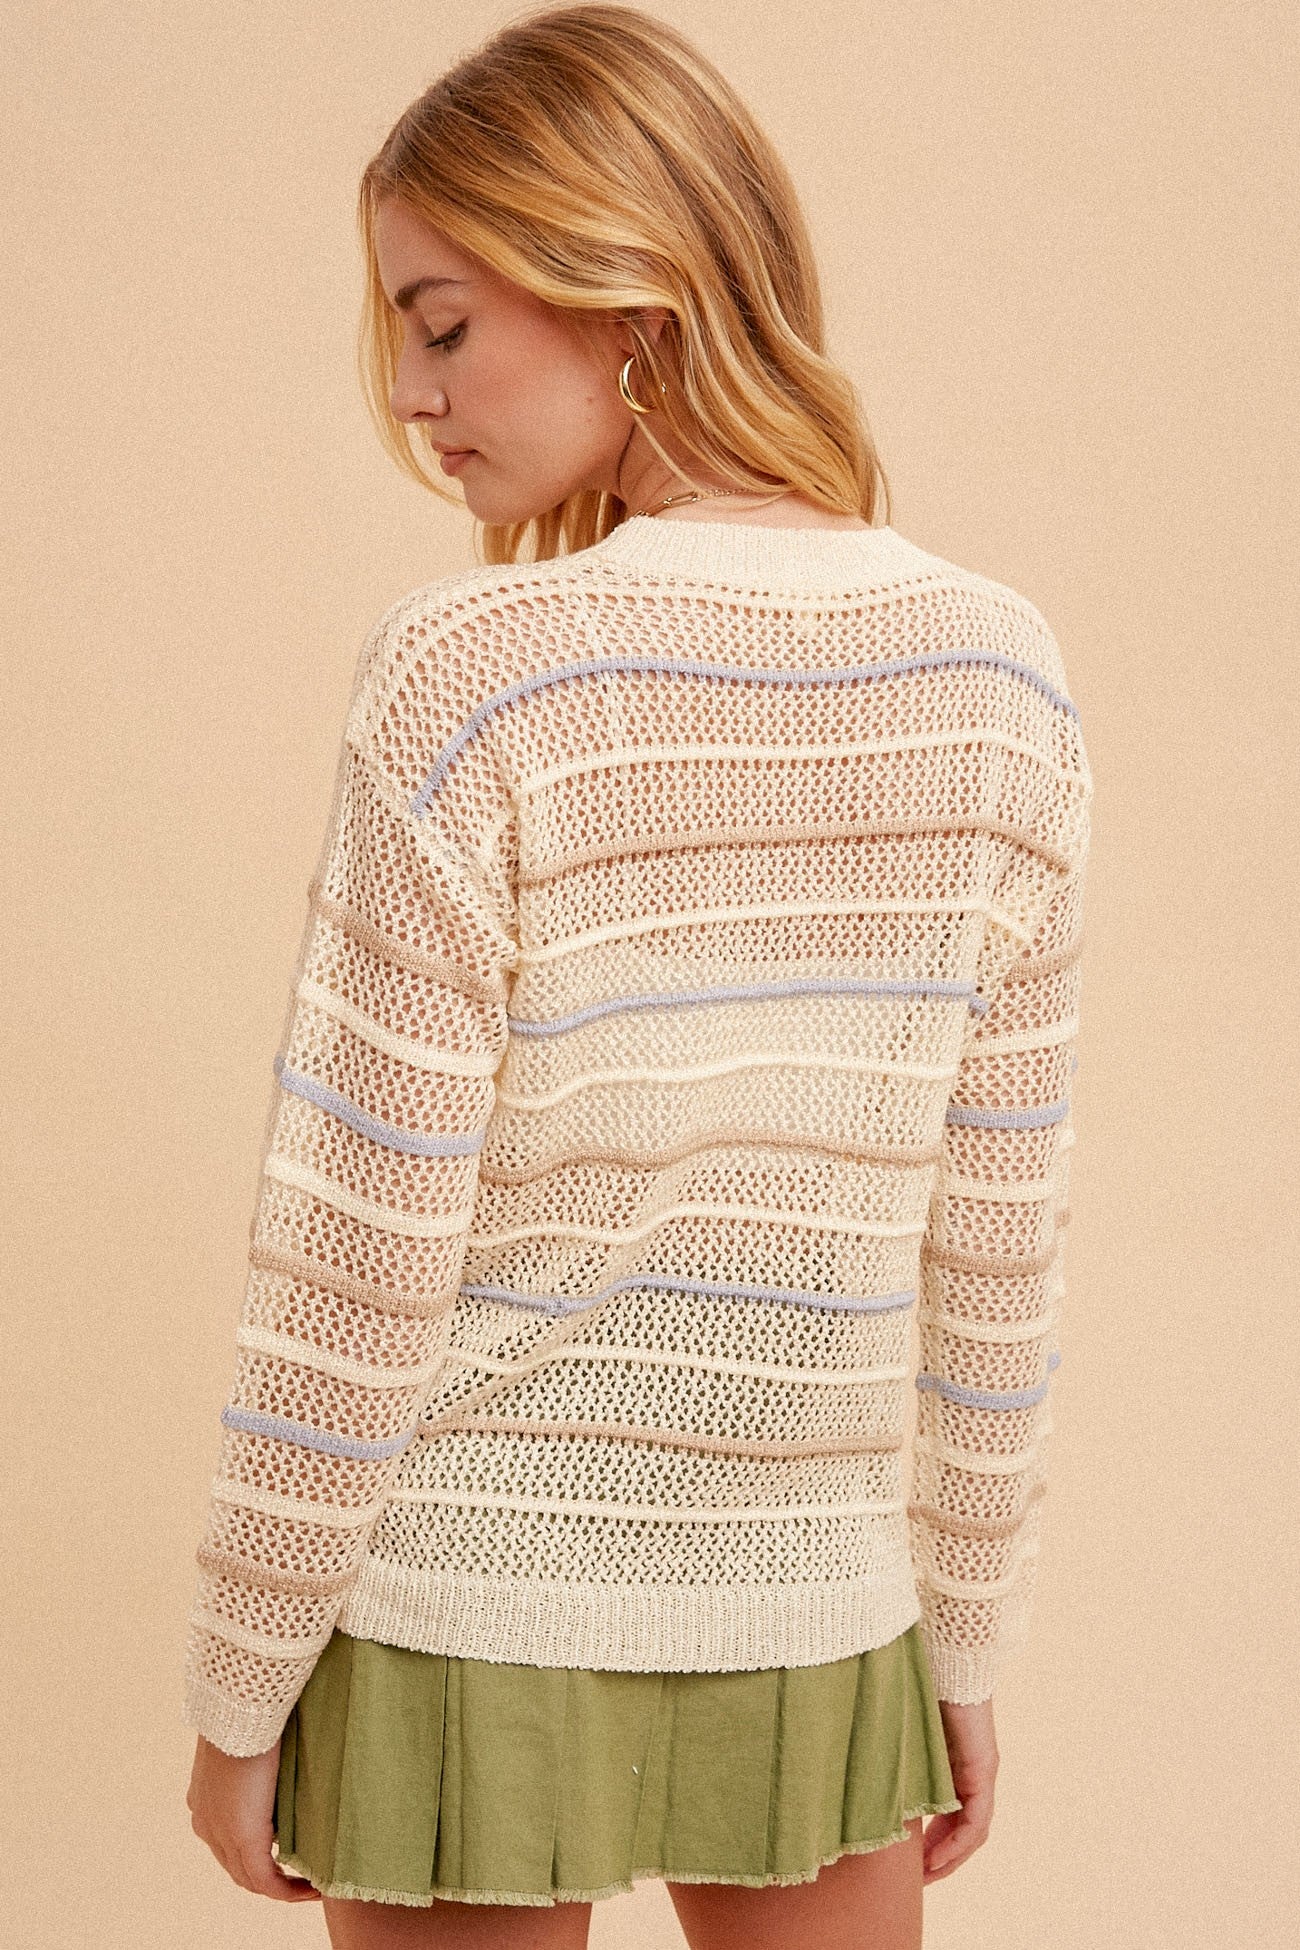 Open Crochet Sweater Periwinkle & Sand